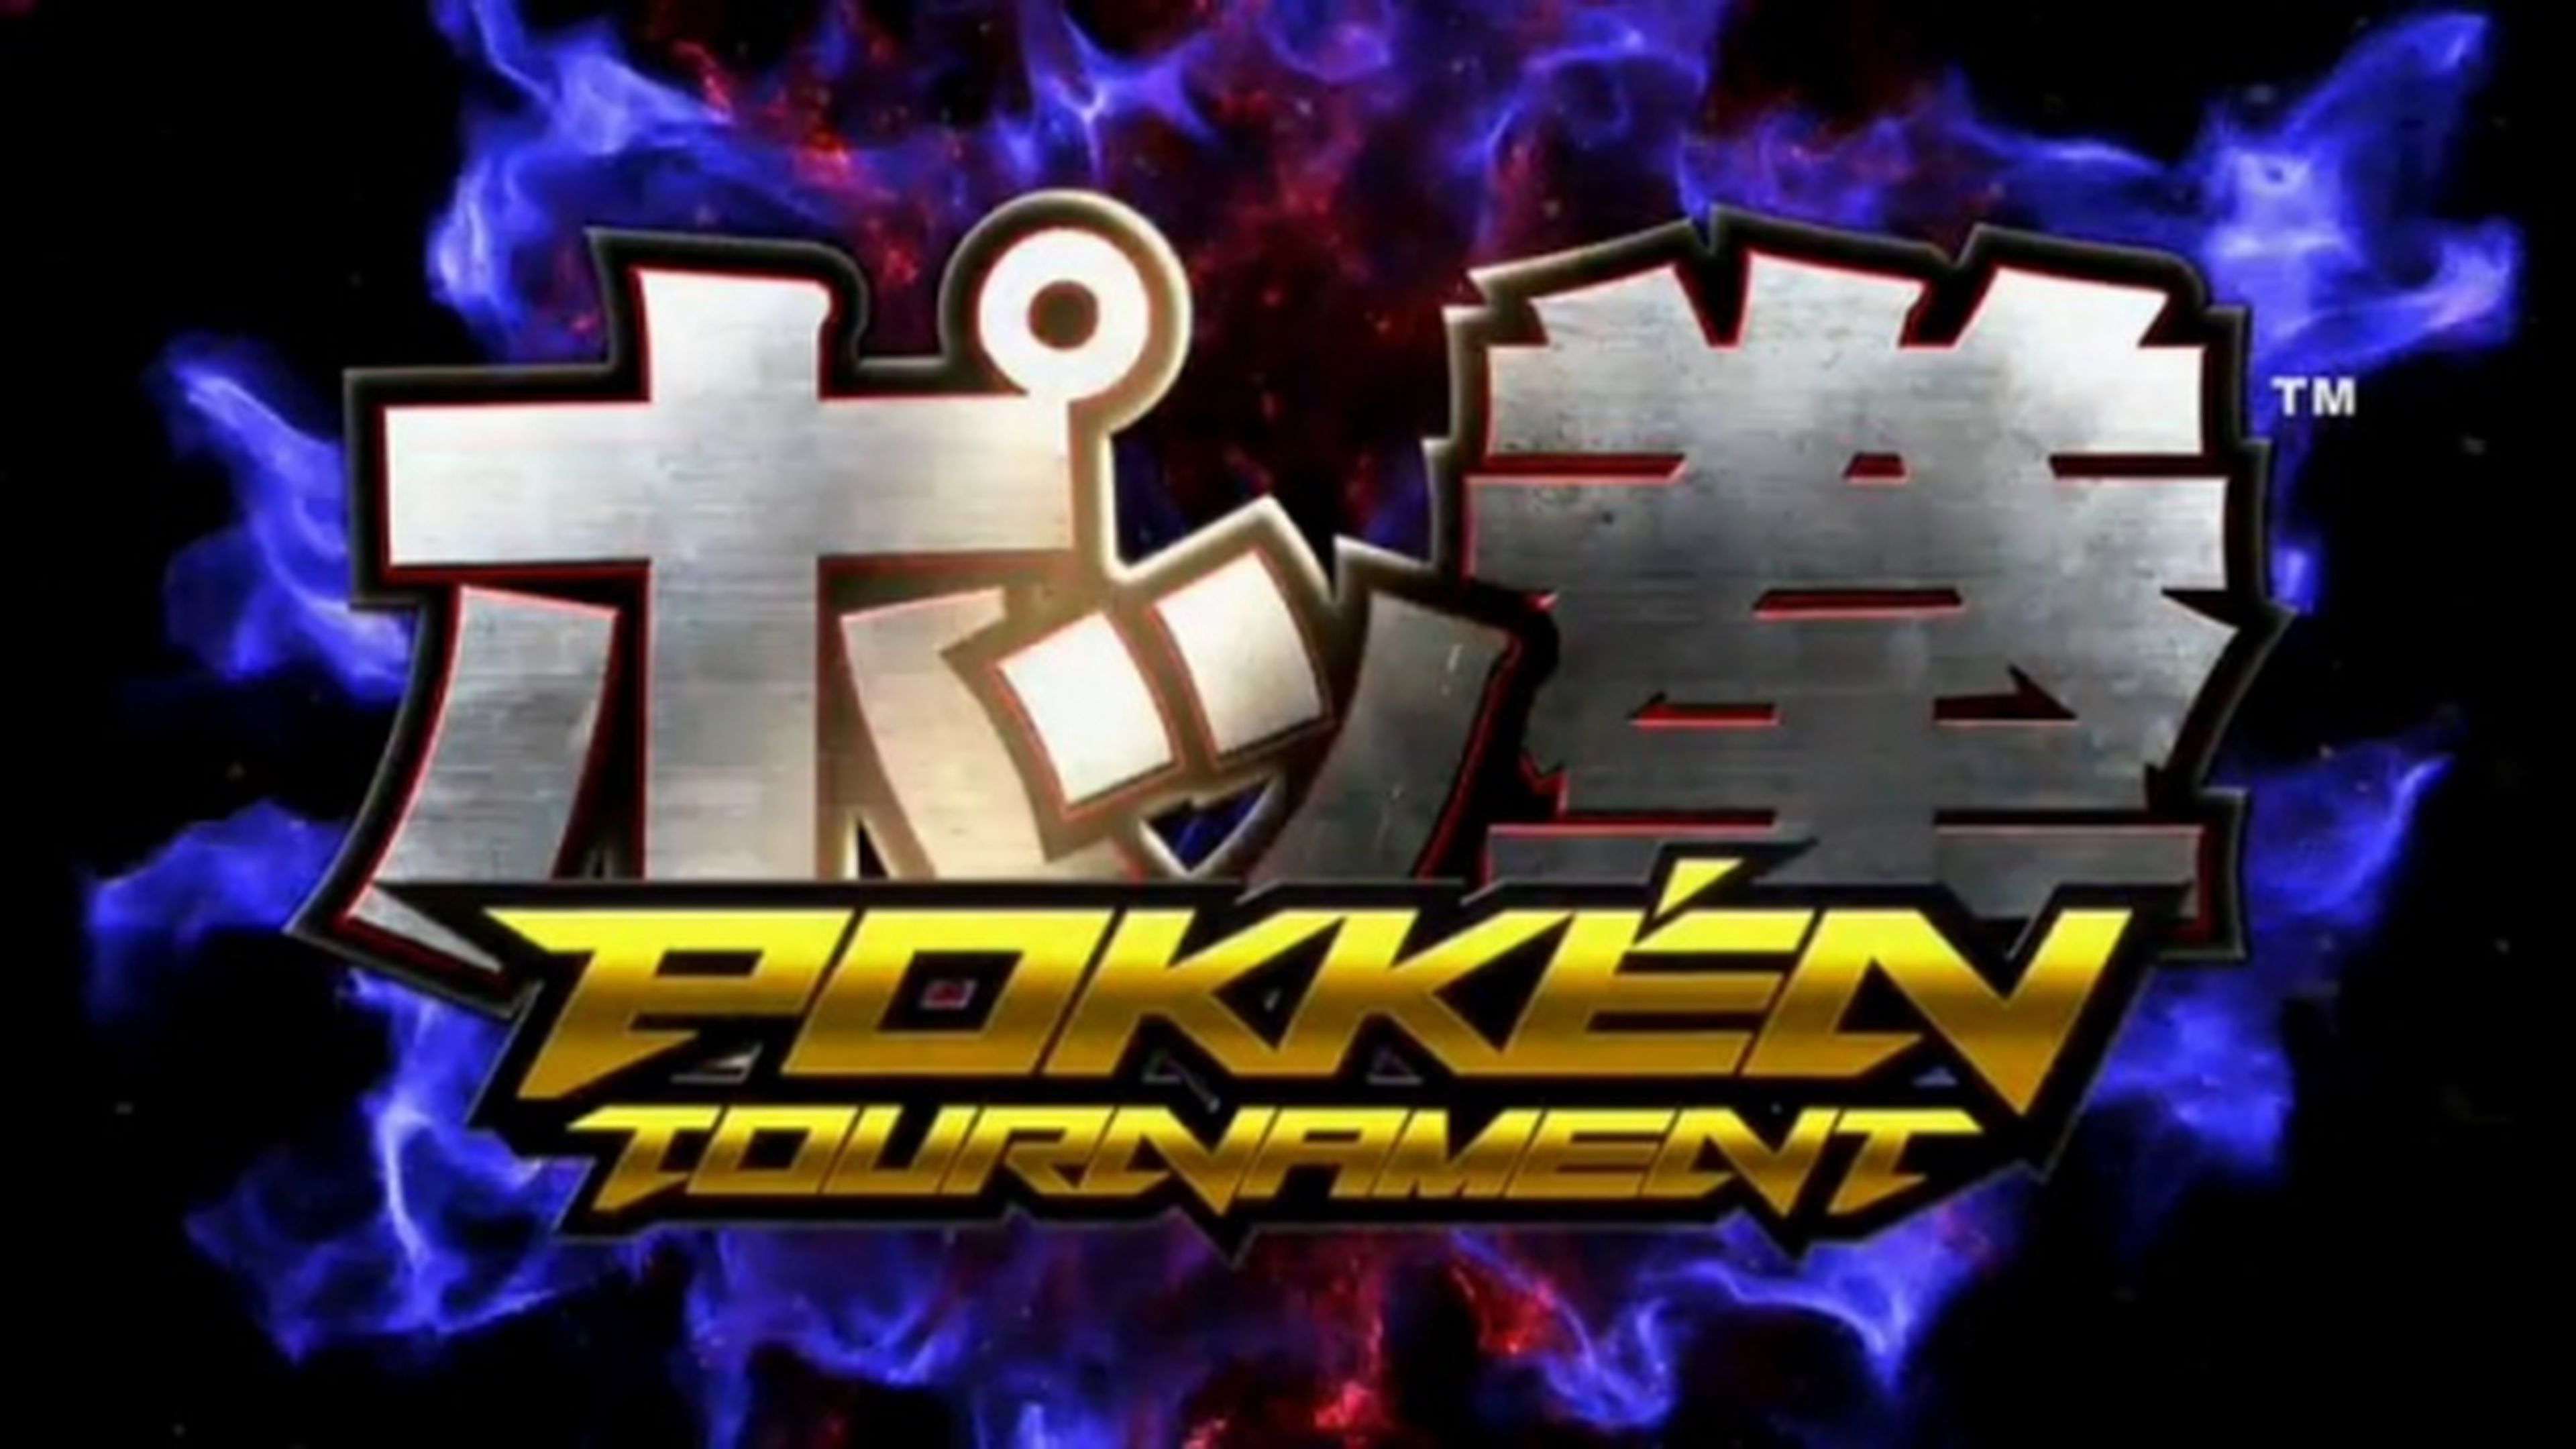 Pokken Tournament, peleas Pokémon tipo Tekken anunciado por Nintendo